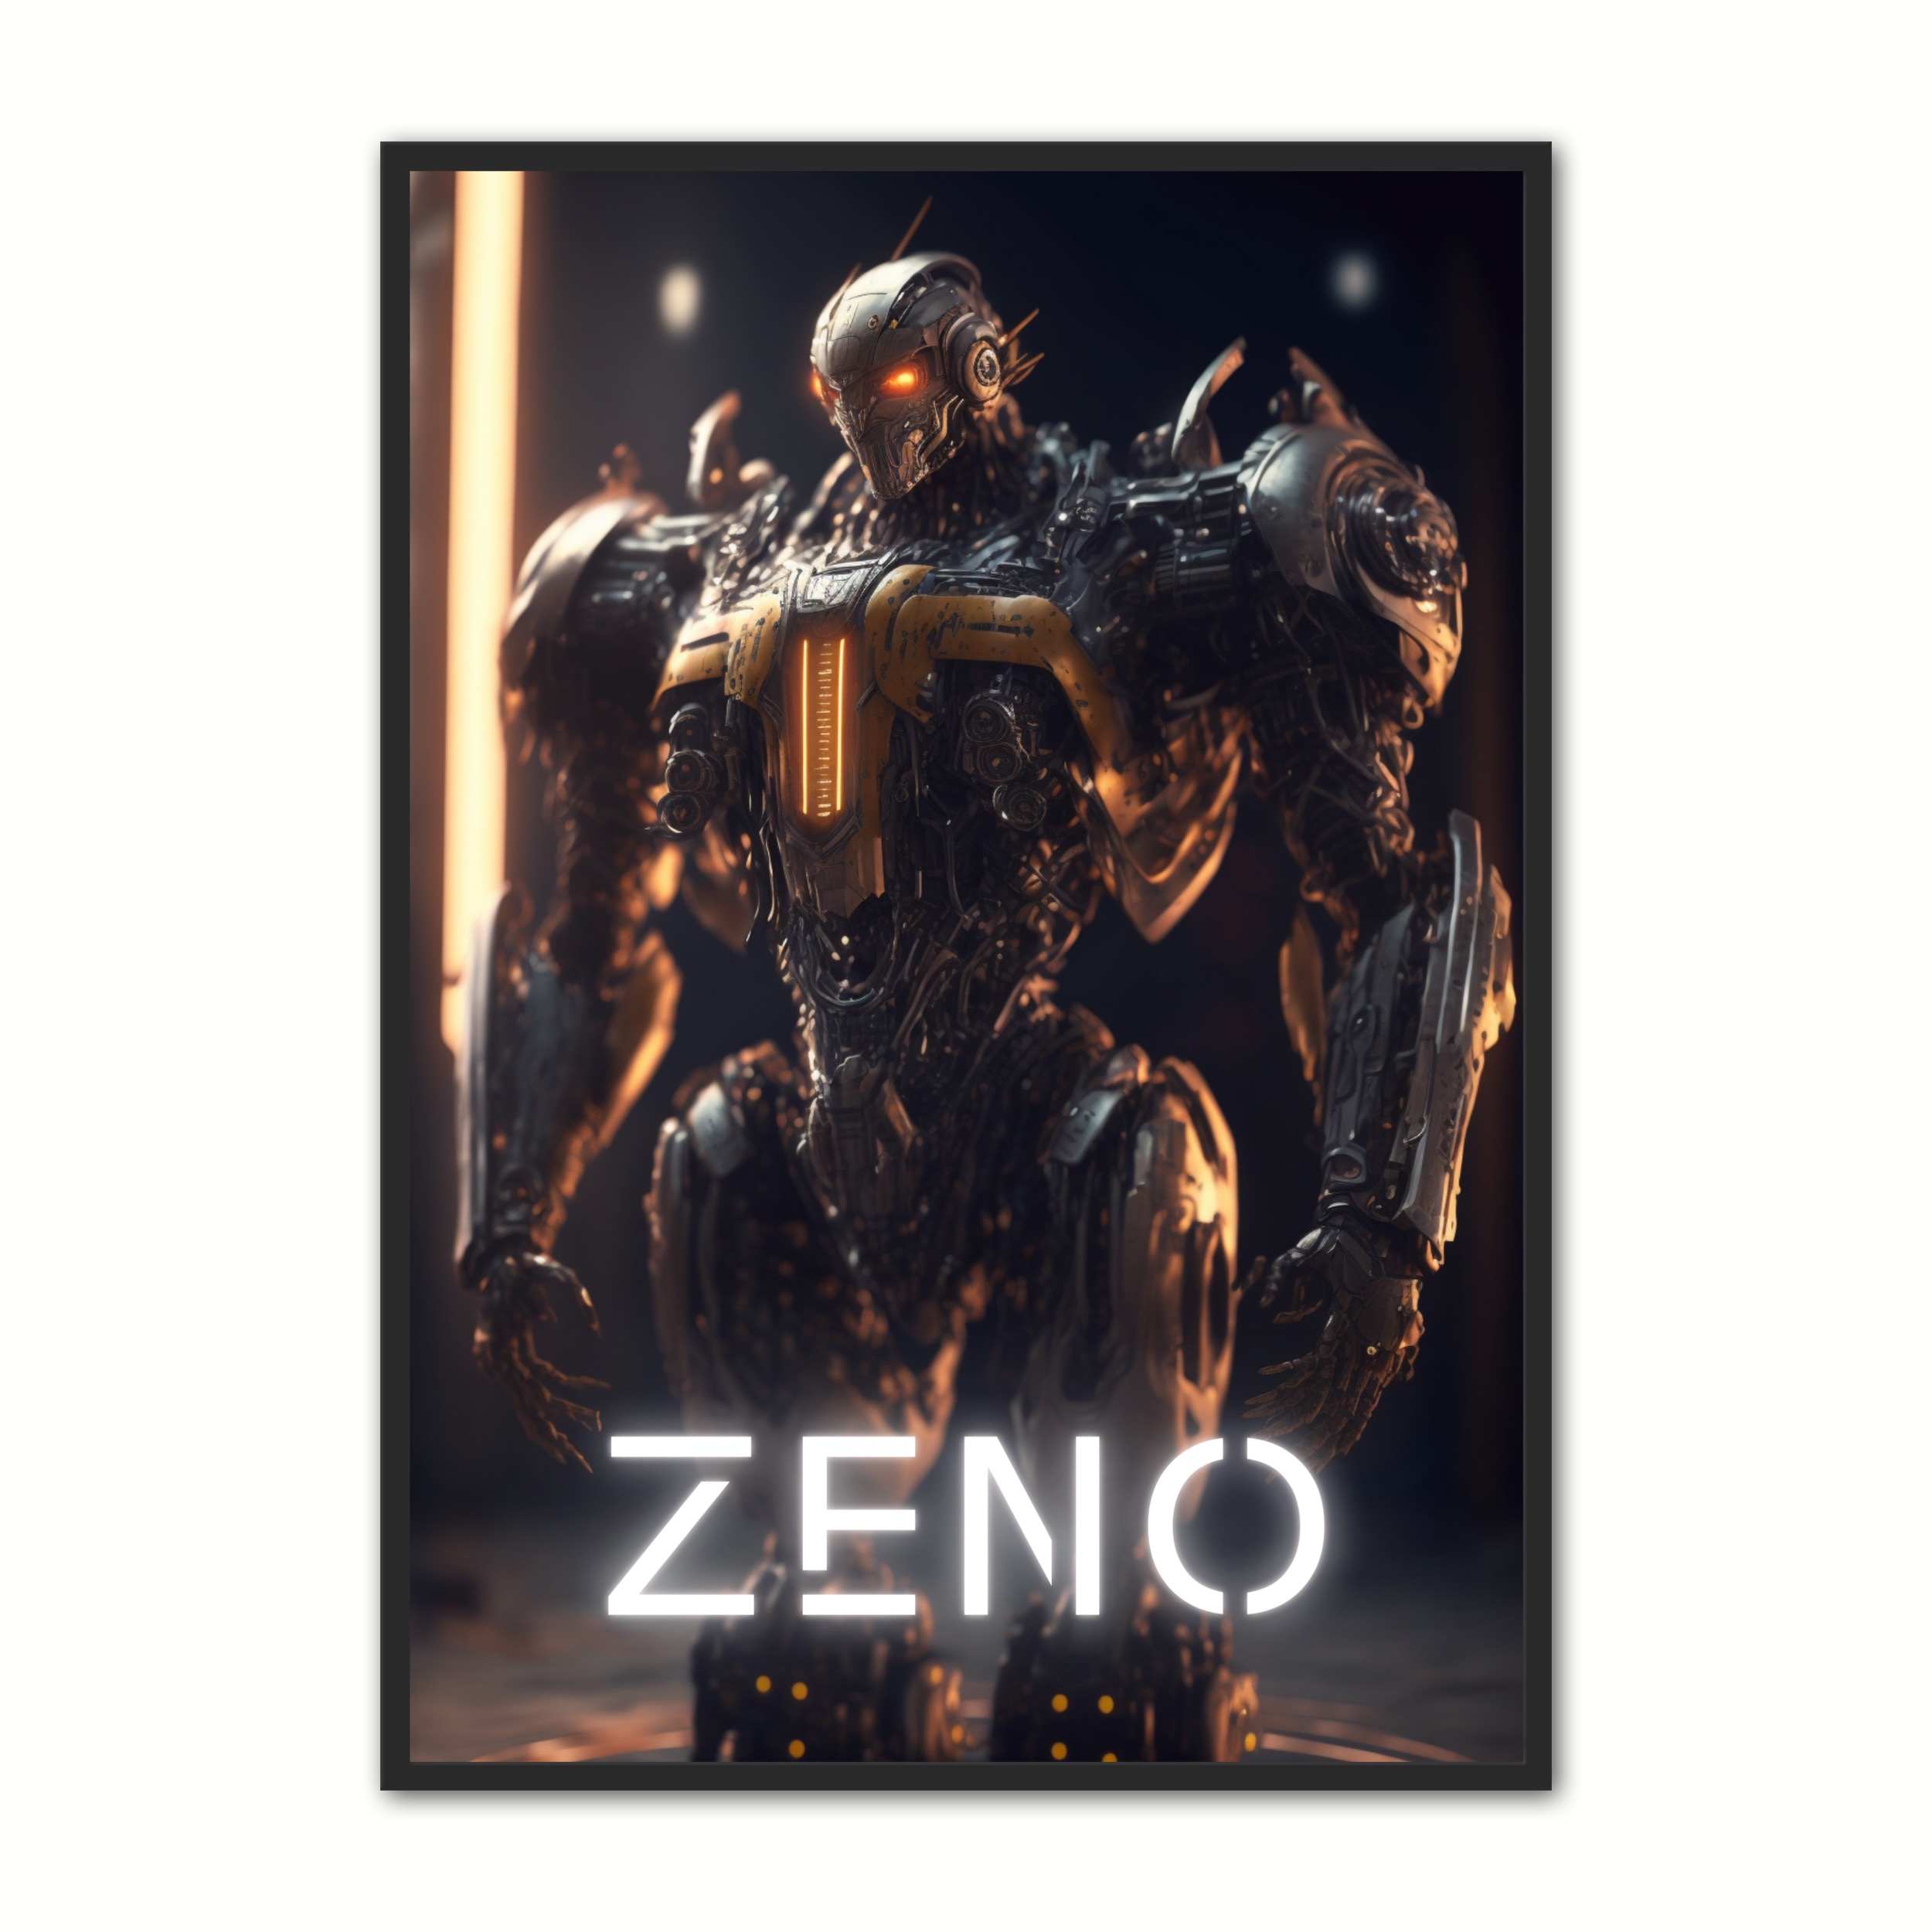 Se Plakat med Zeno - Android 30 x 40 cm hos Nyplakat.dk